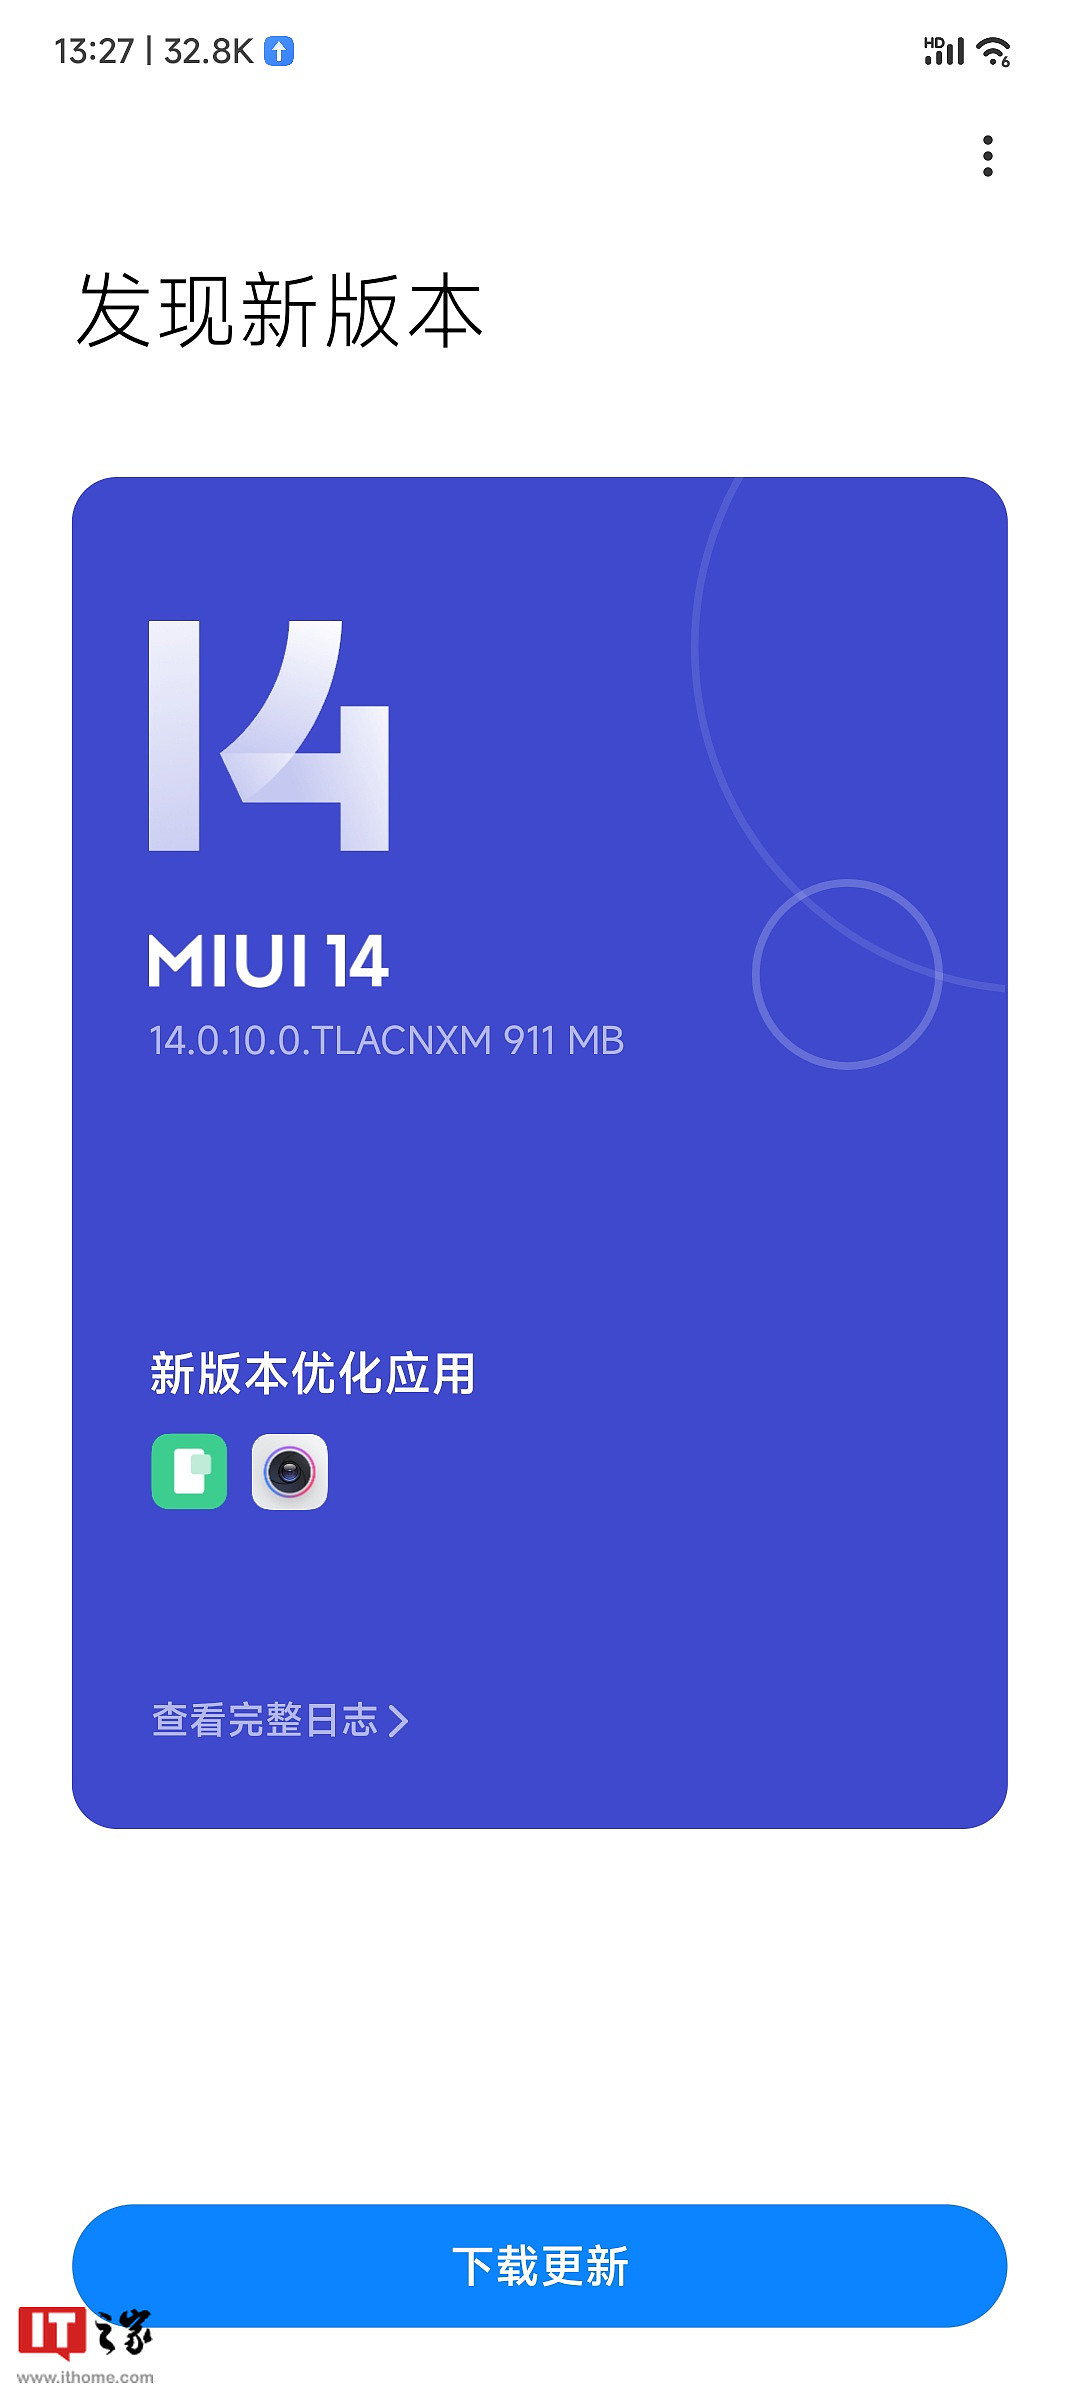 小米 12S Ultra 手机推送 MIUI 14.0.10.0 新版本：后置相机新增 2X 快捷变焦 - 1